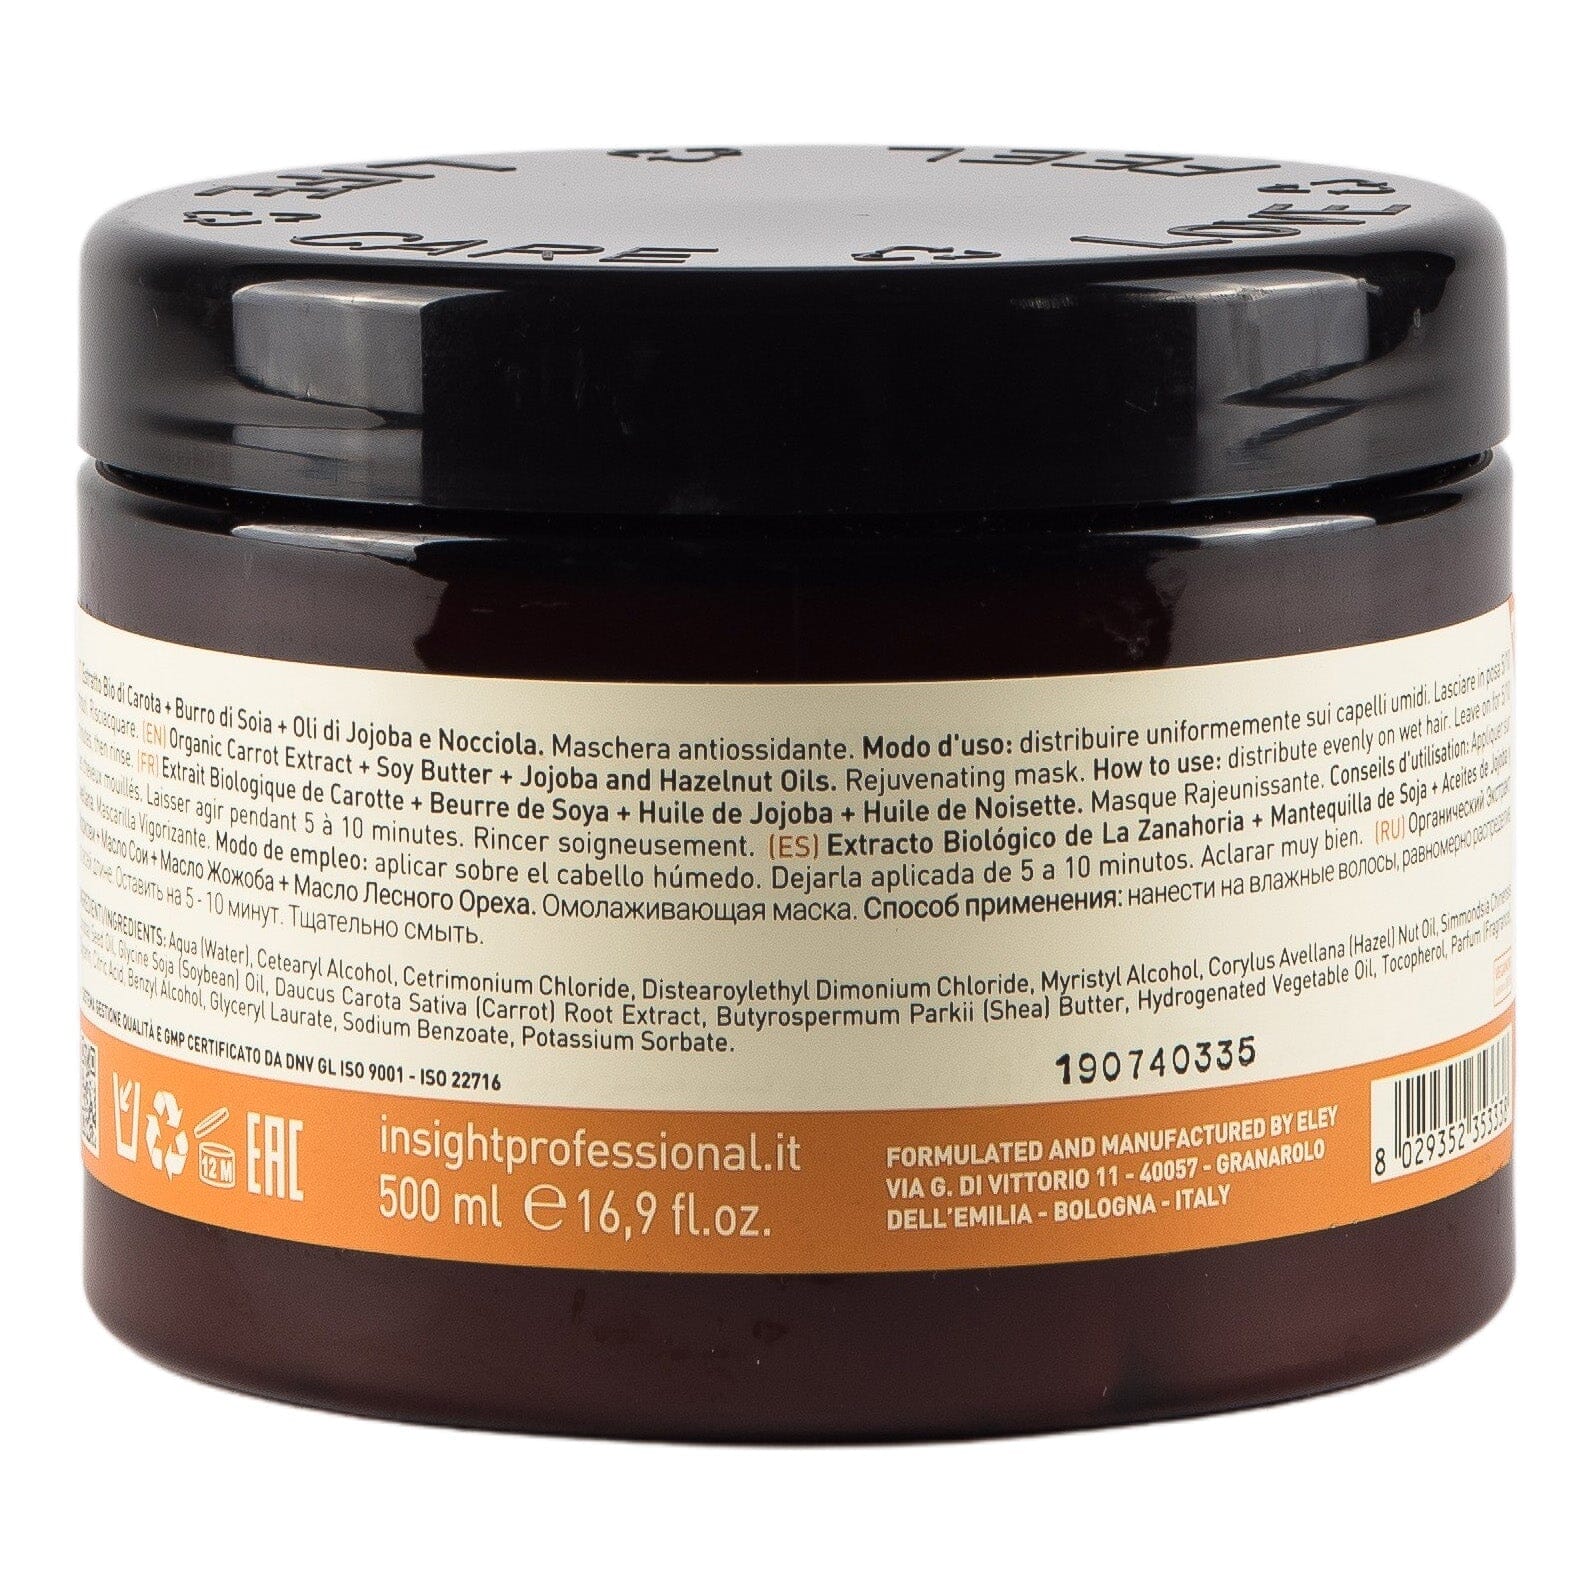 Insight Antioxidant - Rejuvenating Hårmaske 500 ml